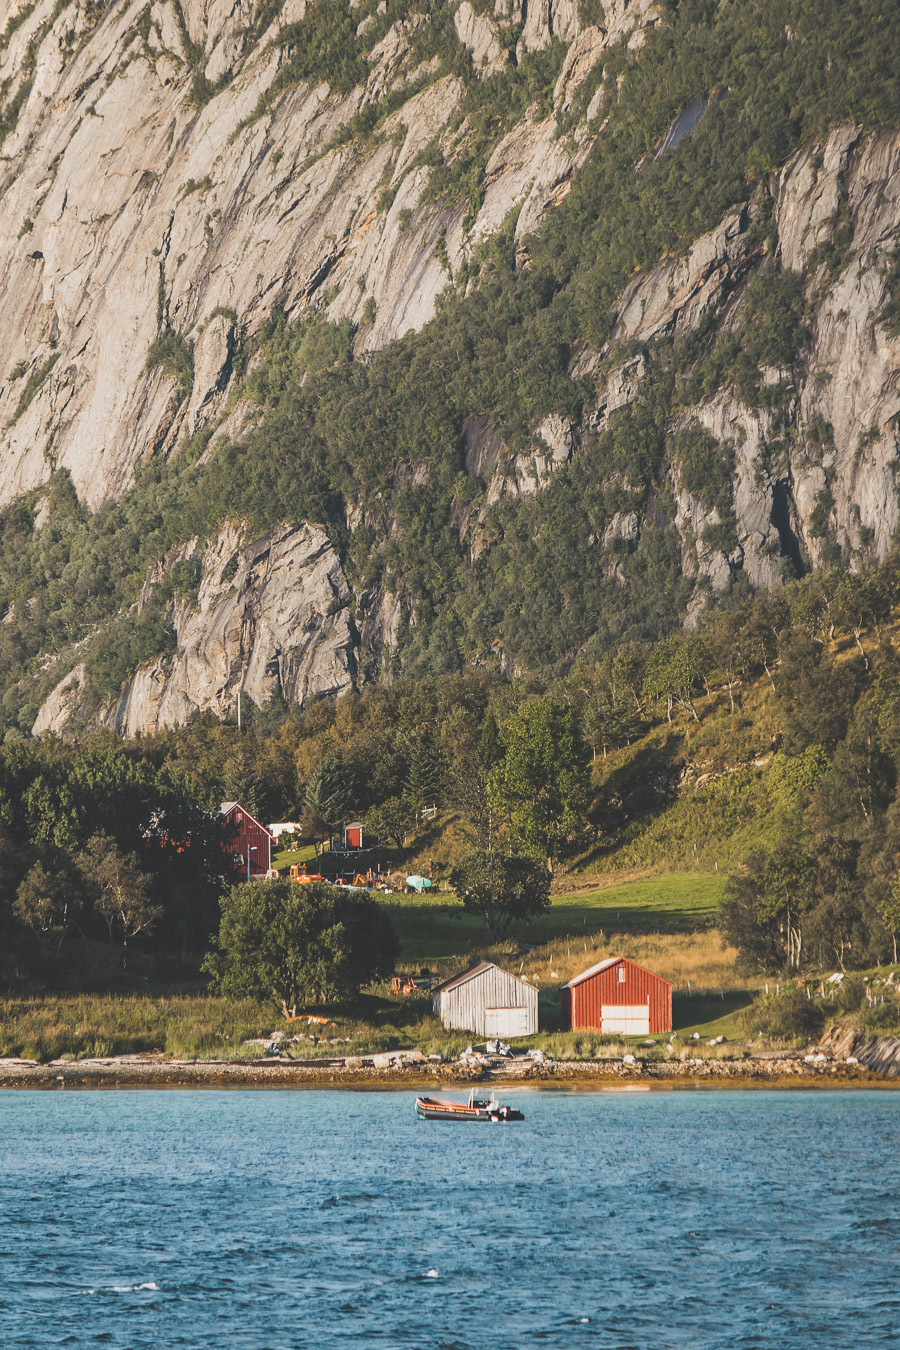 Road trip en Norvège en van aménagé